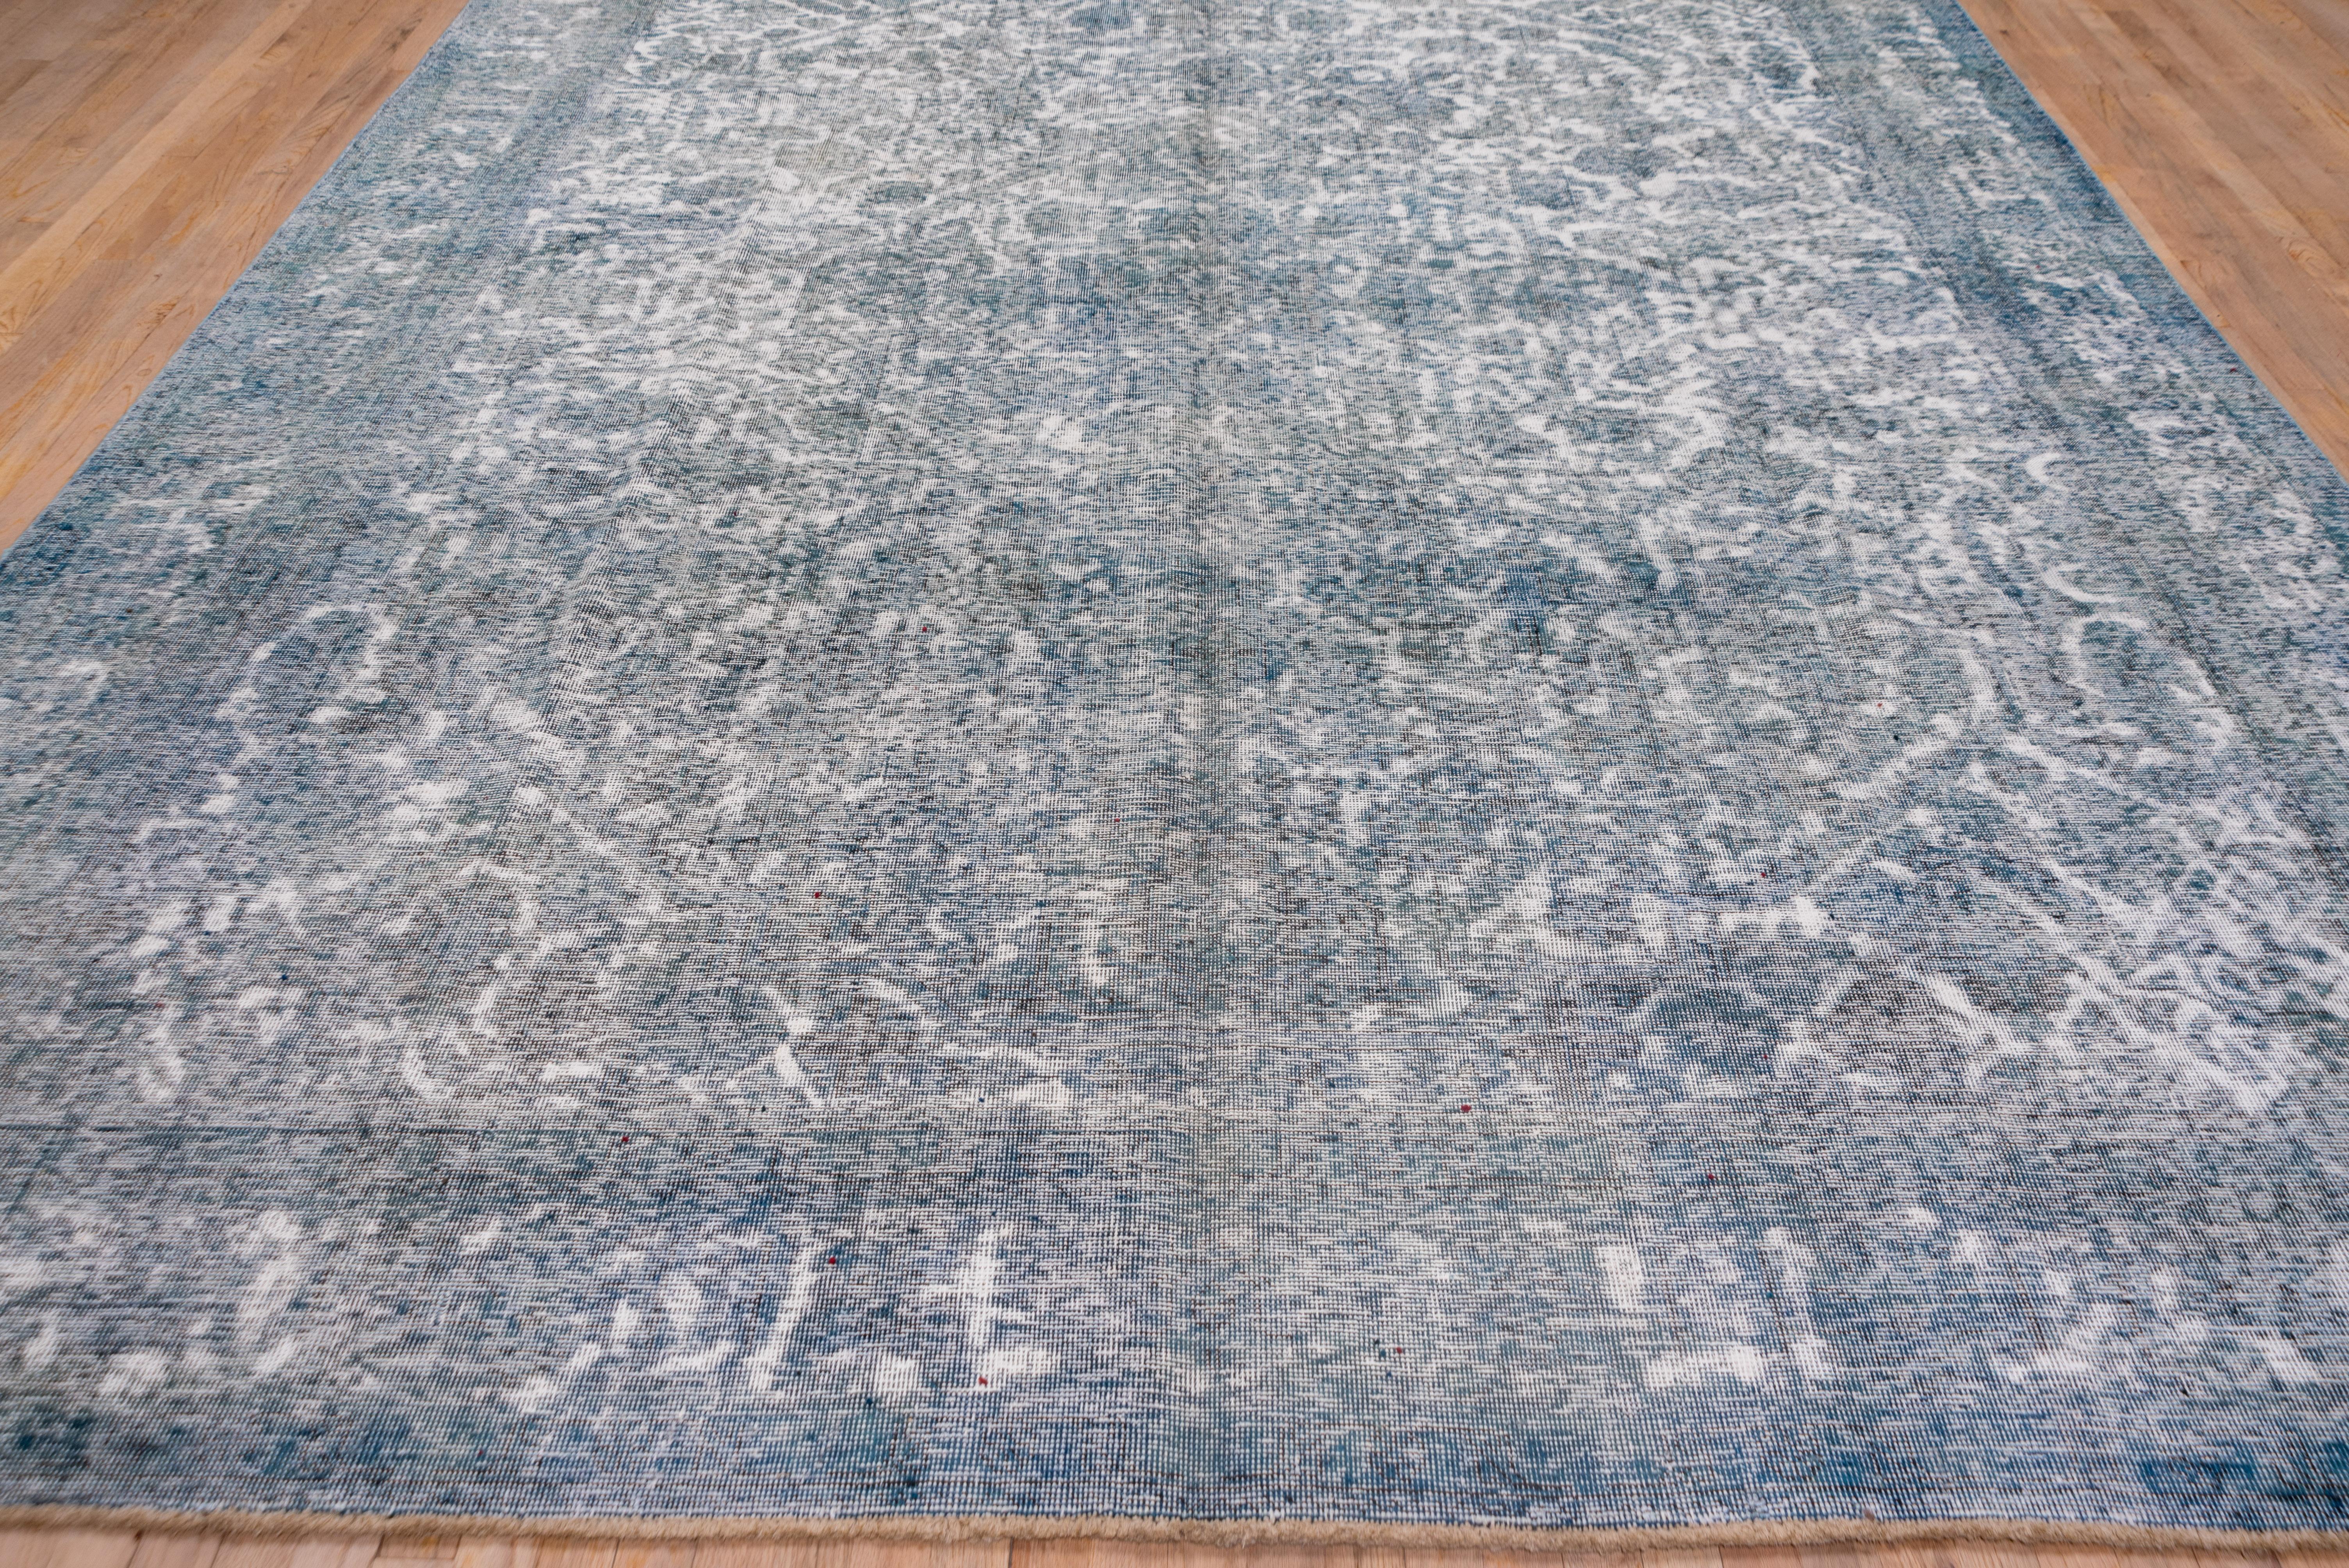 Ein blau und grün überfärbter Teppich mit einem geschäftigen Blatt- und Palmettenmuster. Palmetten-Bordüre. Mäßig gewebt, Baumwollbasis, ganzflächige Abnutzung, die sich der Notlage nähert. Bei der Überfärbung wird die Palette in weniger Farbtöne